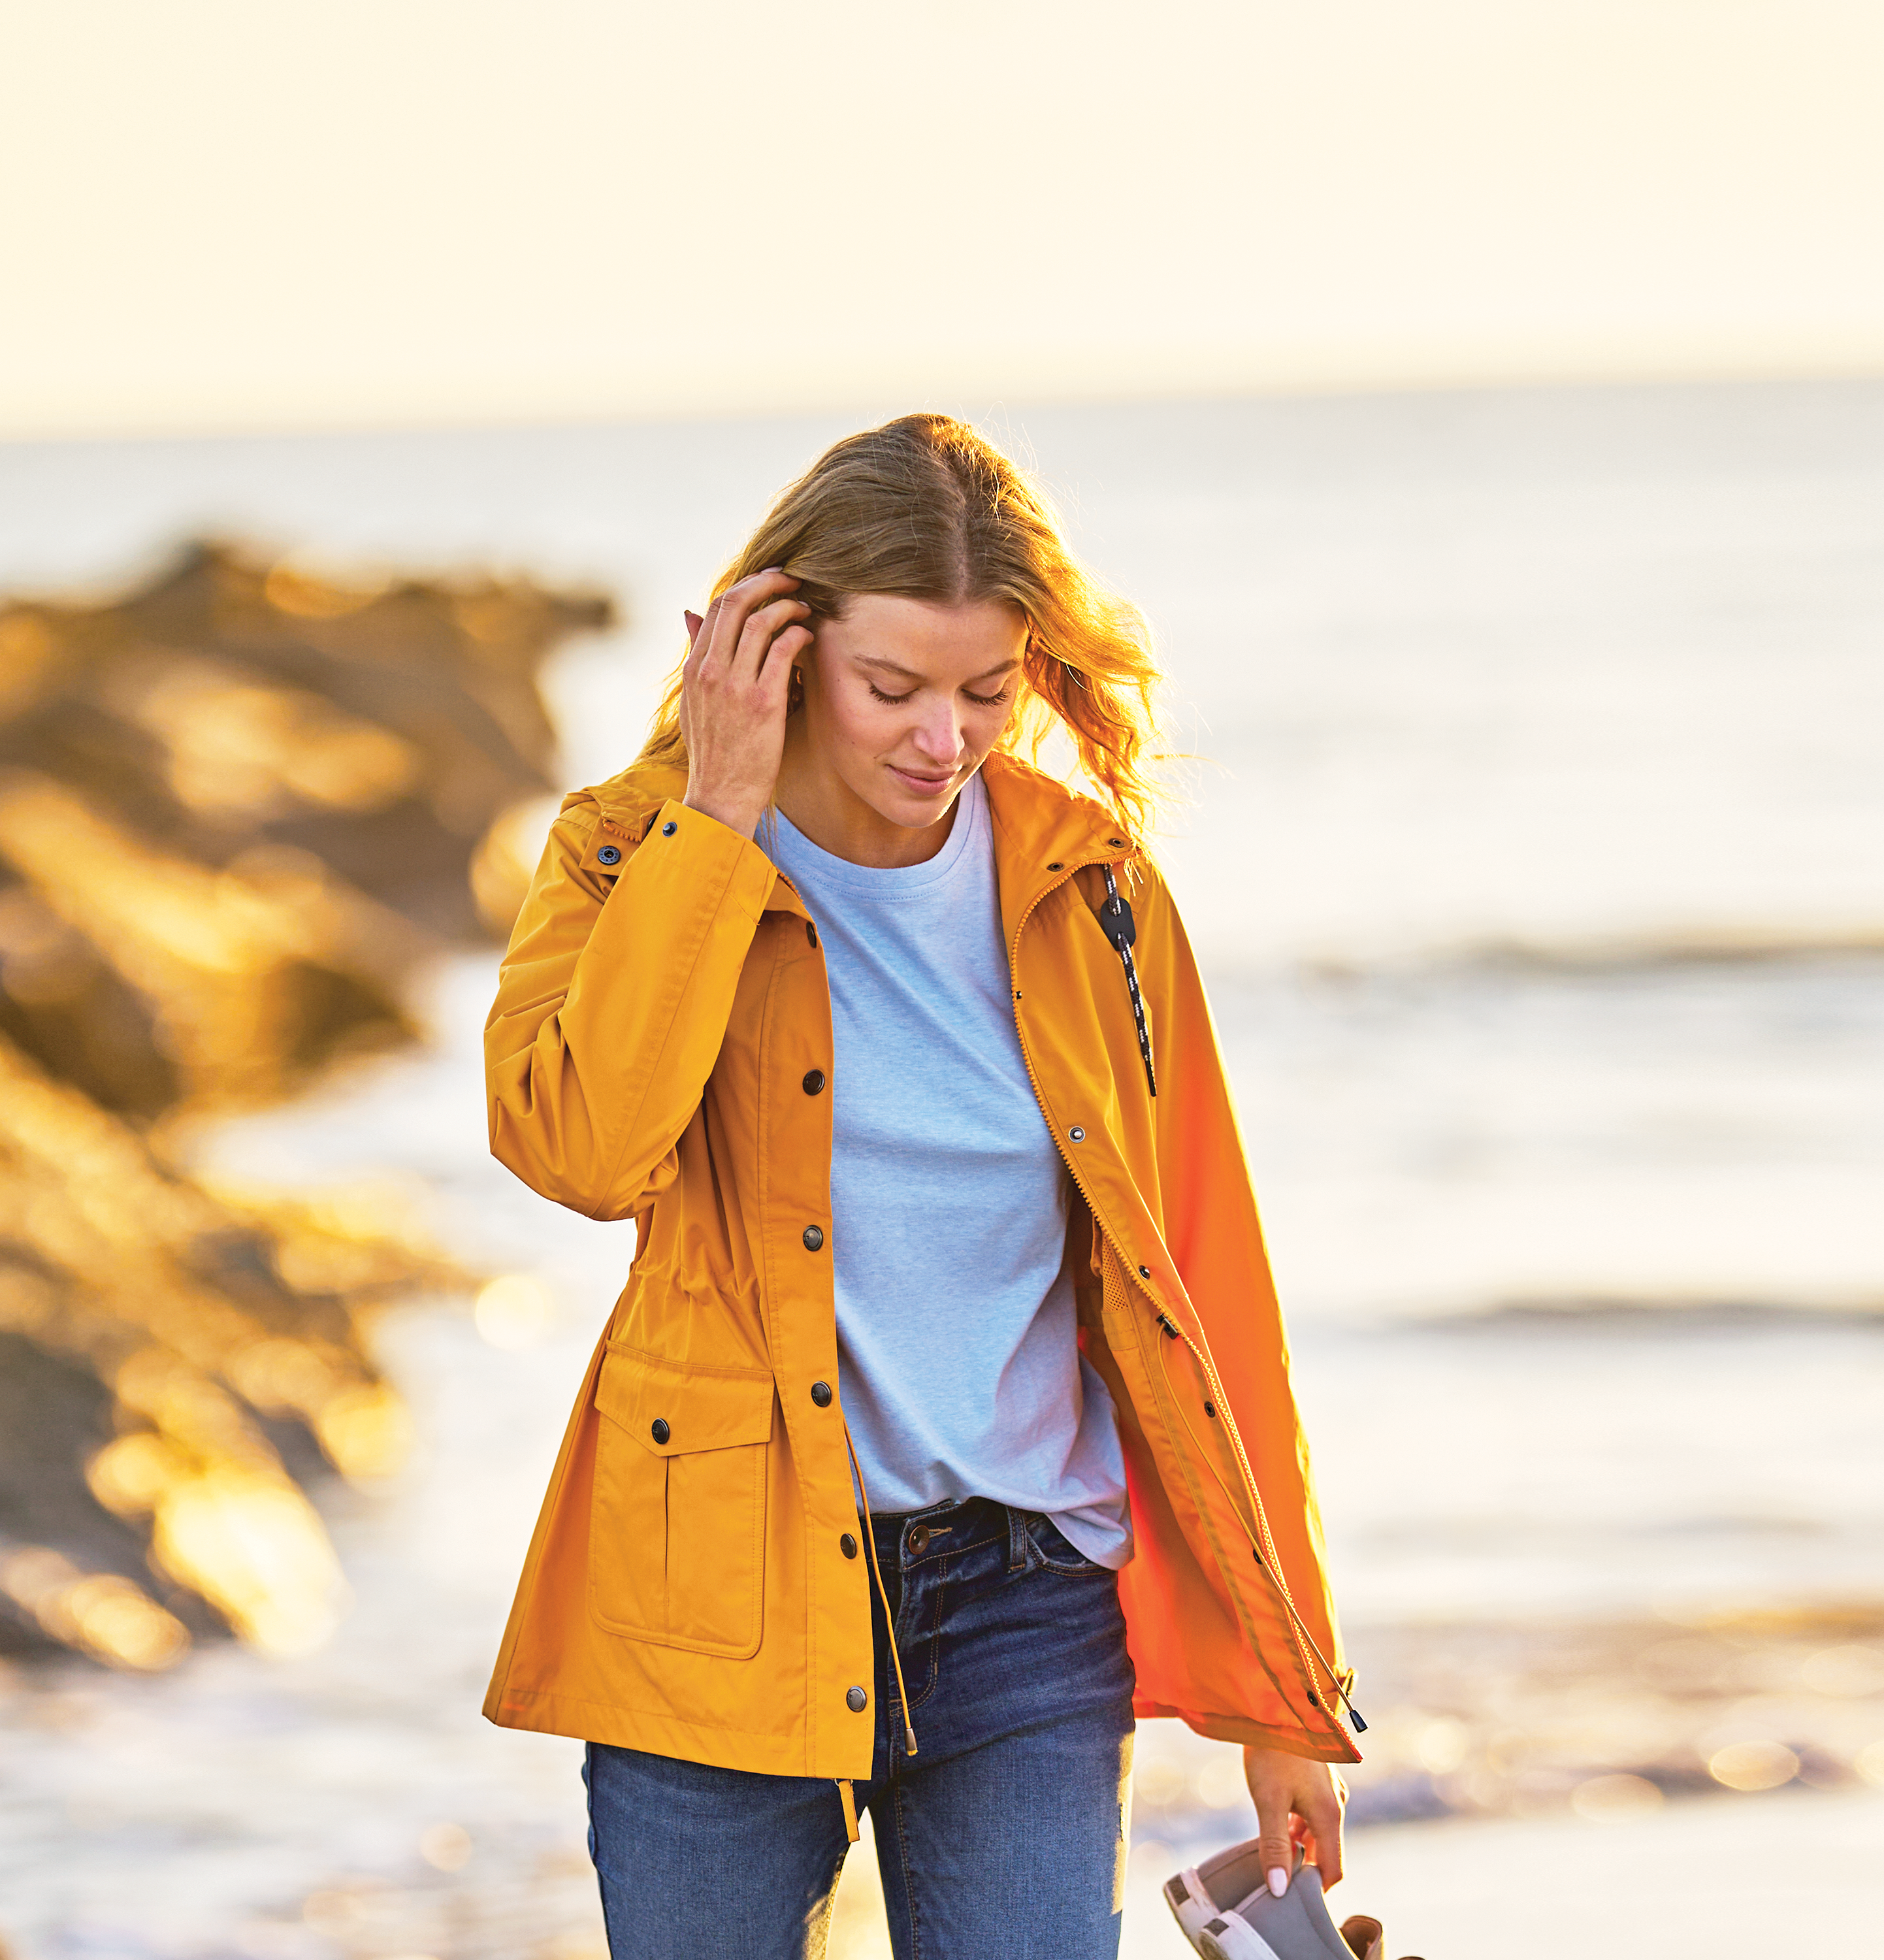 Natural Reflections Full-Zip Fleece Jacket for Ladies